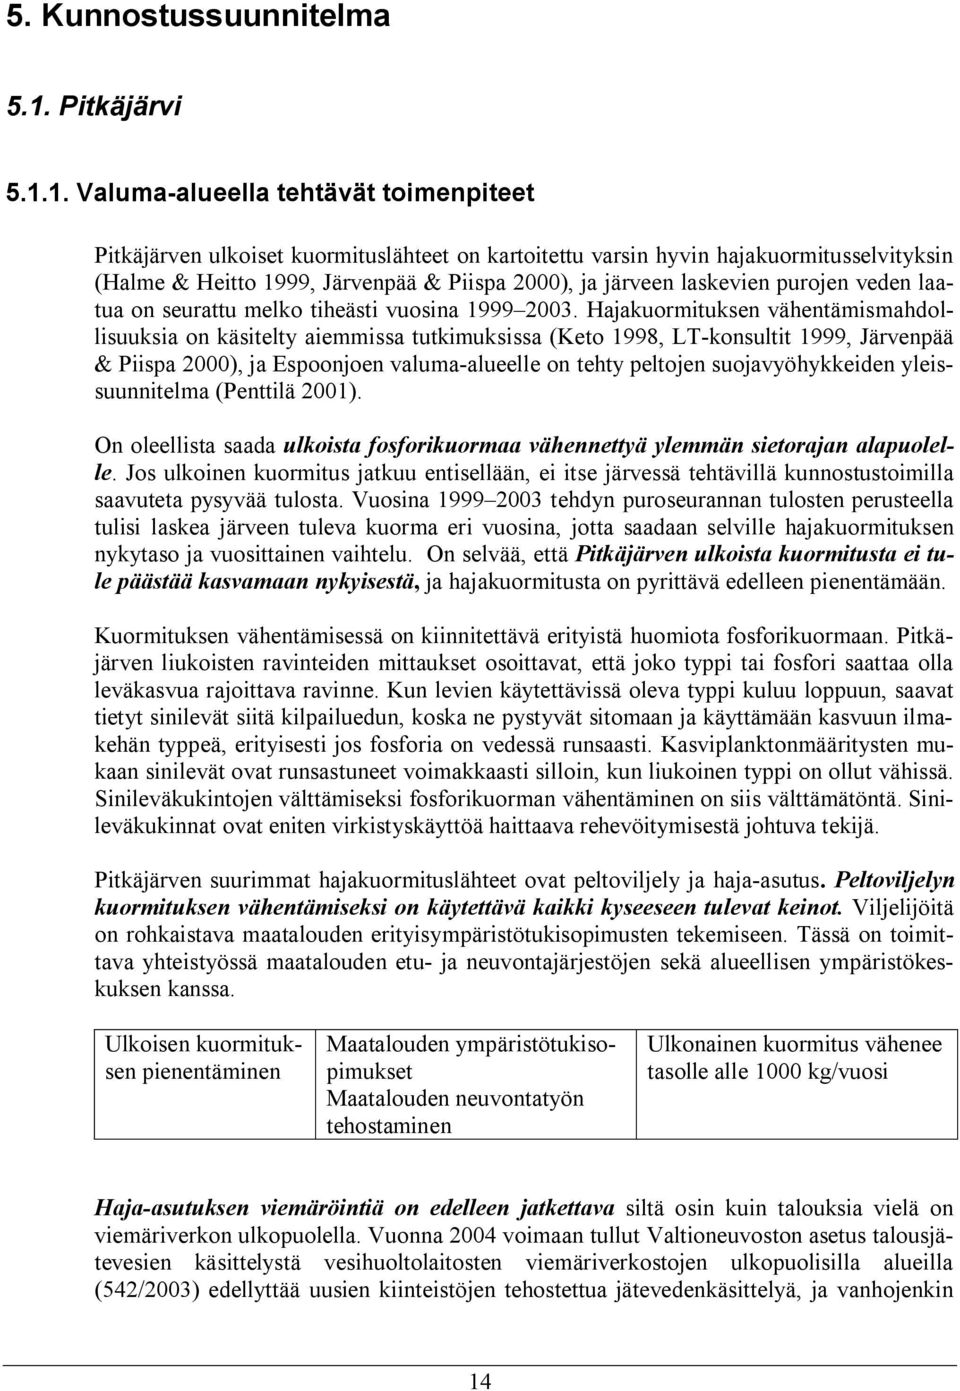 1. Valuma-alueella tehtävät toimenpiteet Pitkäjärven ulkoiset kuormituslähteet on kartoitettu varsin hyvin hajakuormitusselvityksin (Halme & Heitto 1999, Järvenpää & Piispa 2000), ja järveen